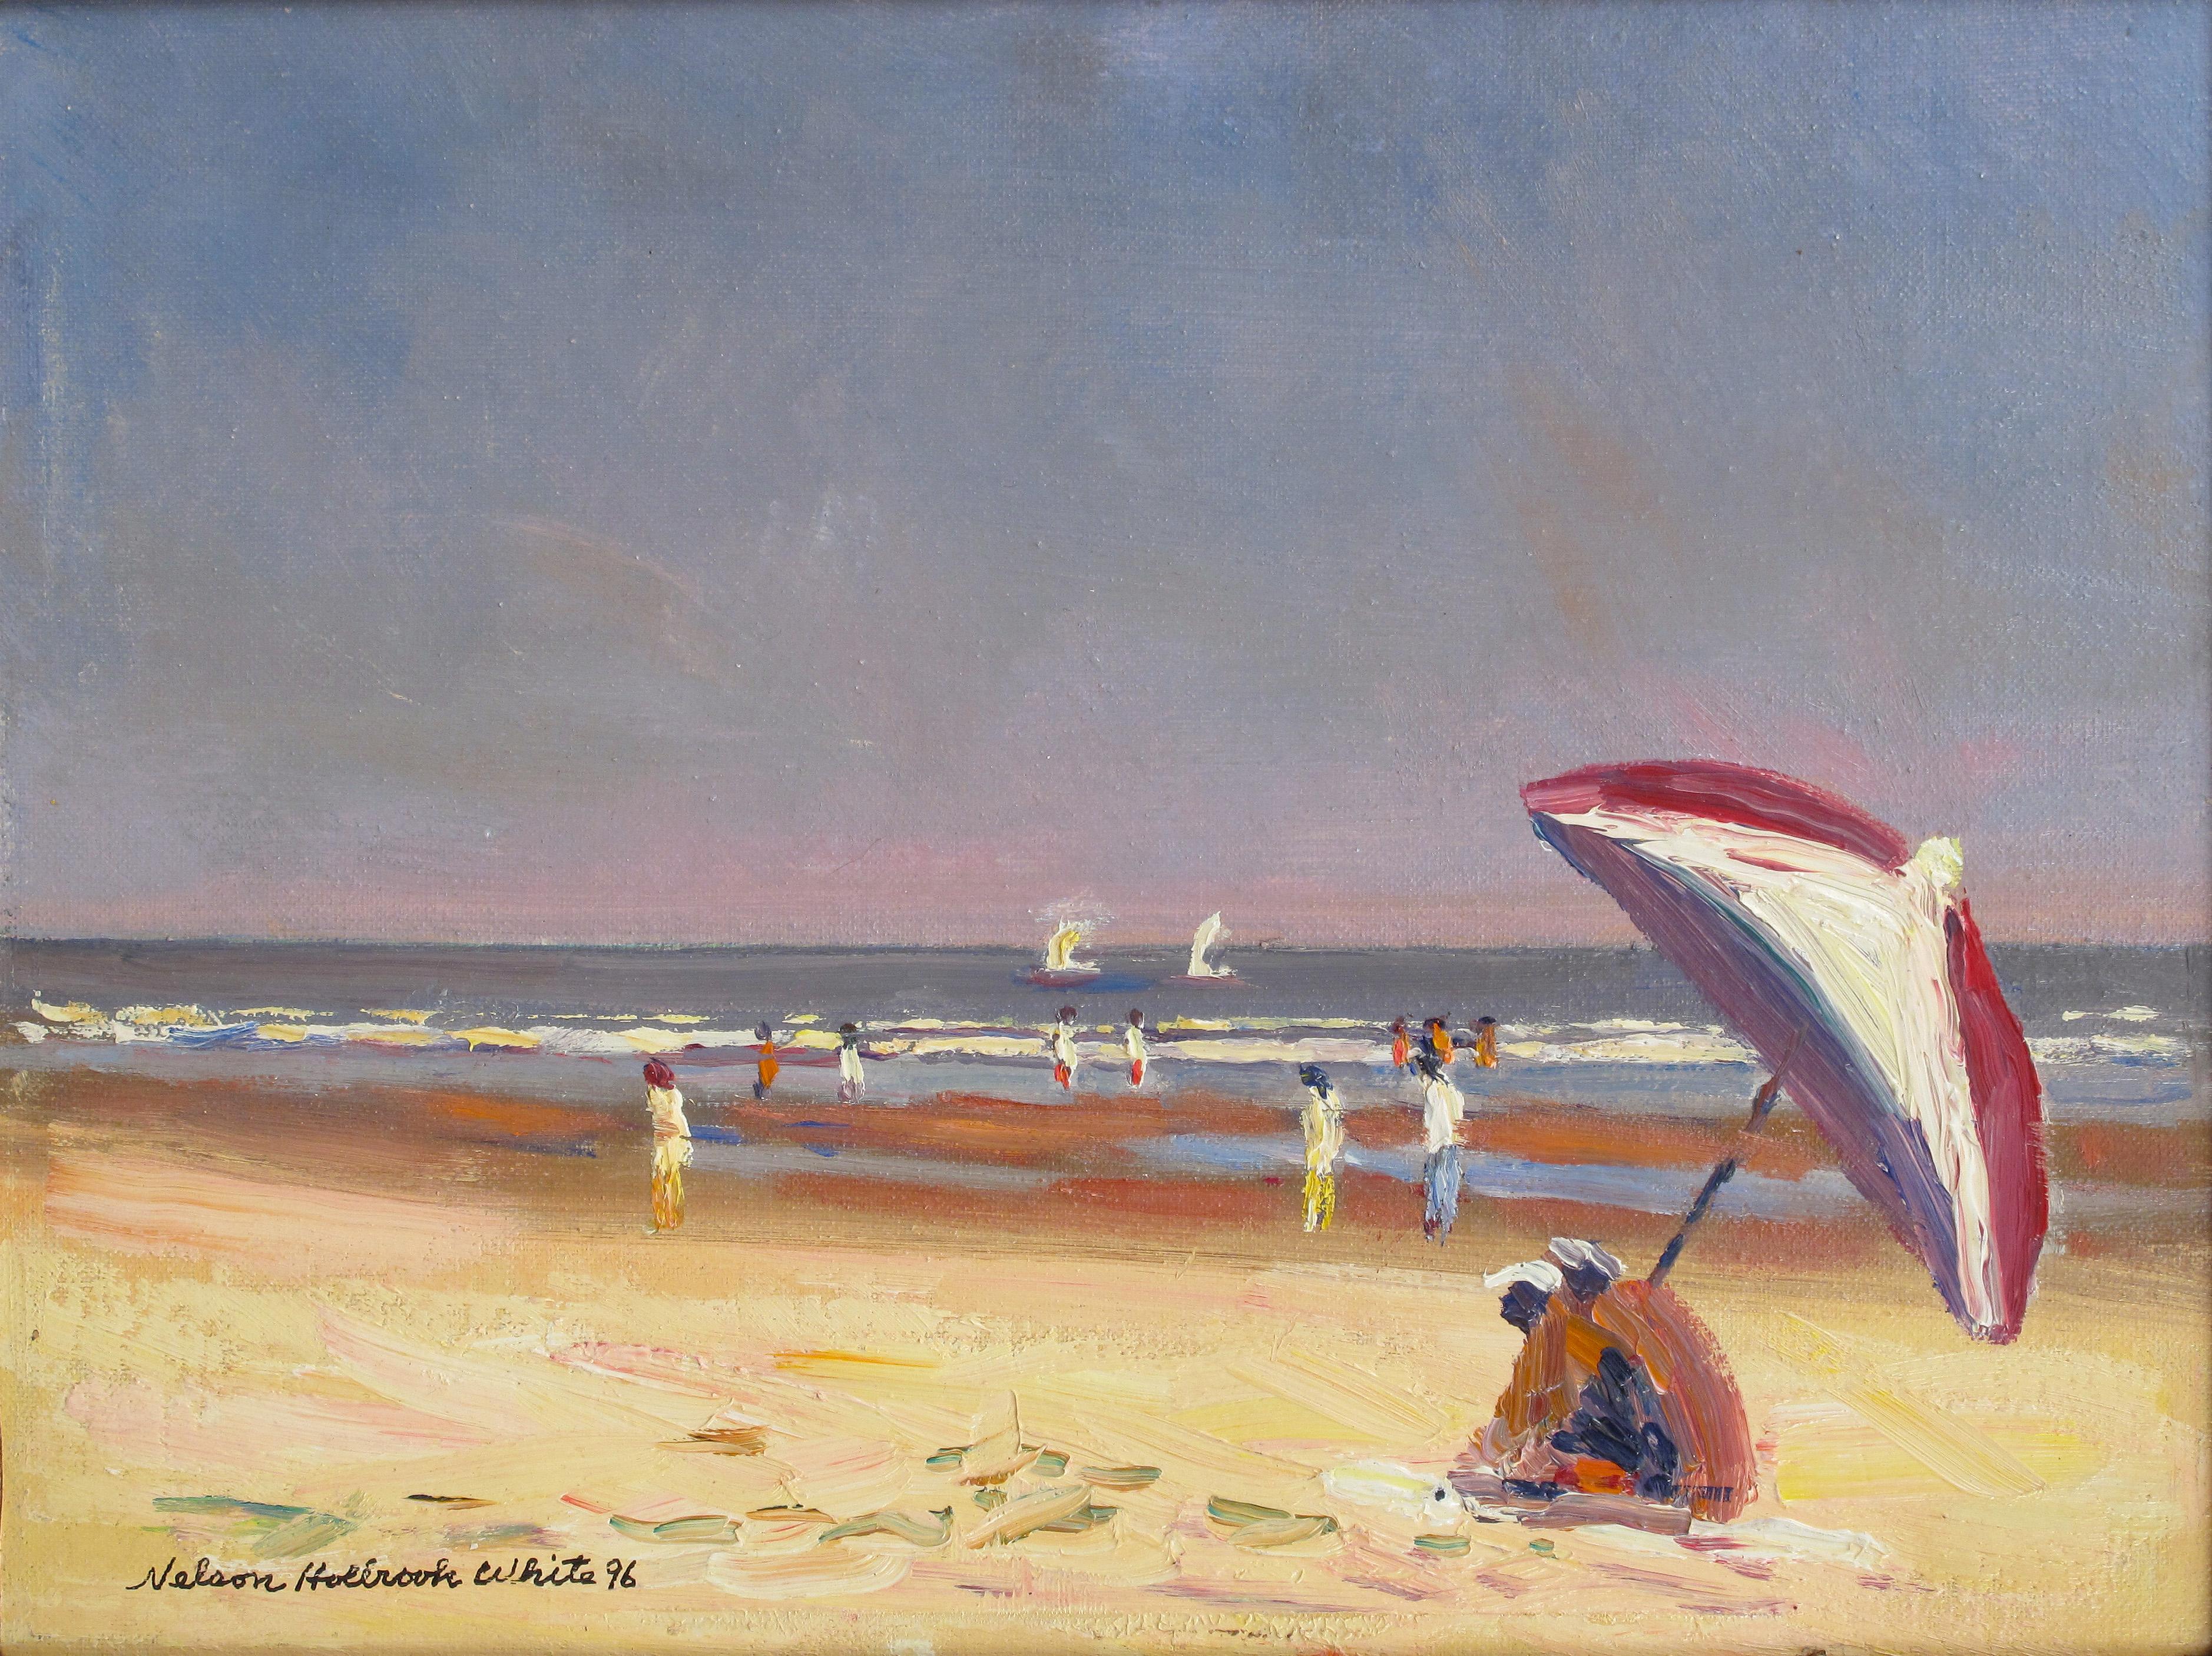 Landscape Painting Nelson H. White - Scène de plage Ogunquit Maine 04,02.1996